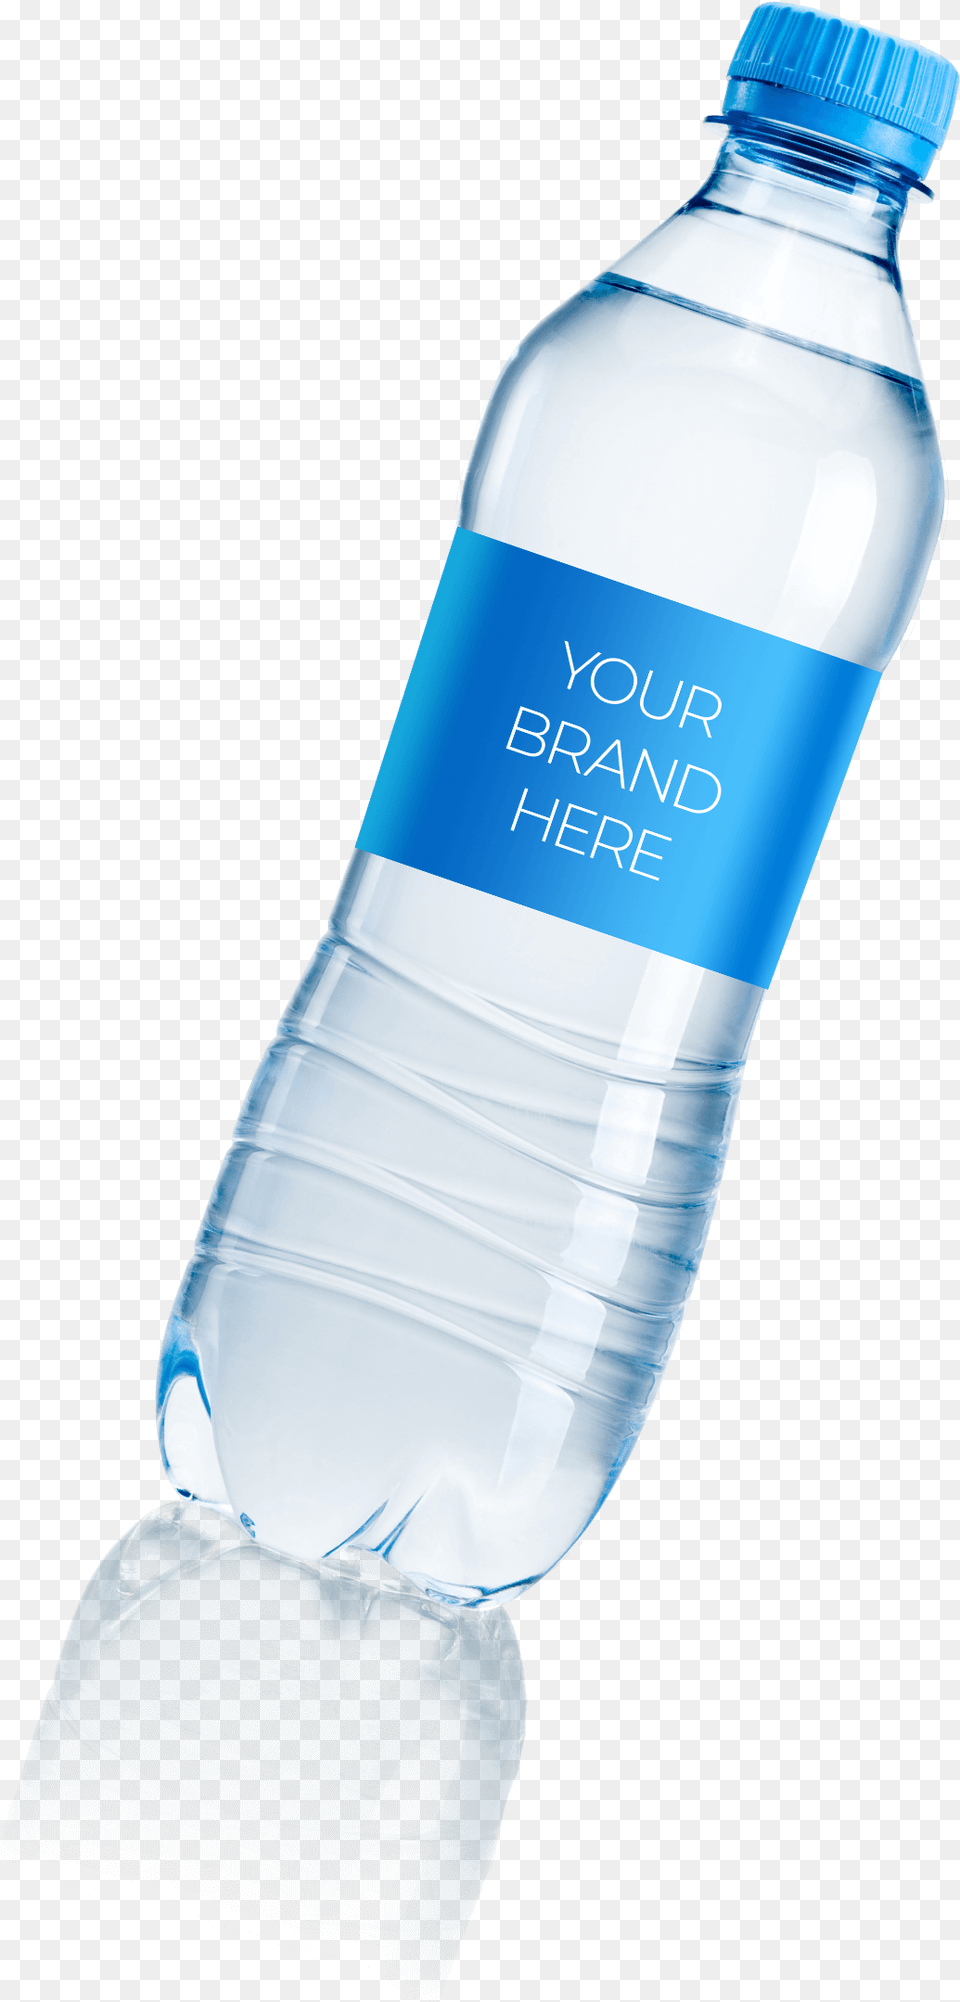 Spring Water Bottles, Beverage, Bottle, Mineral Water, Water Bottle Png Image